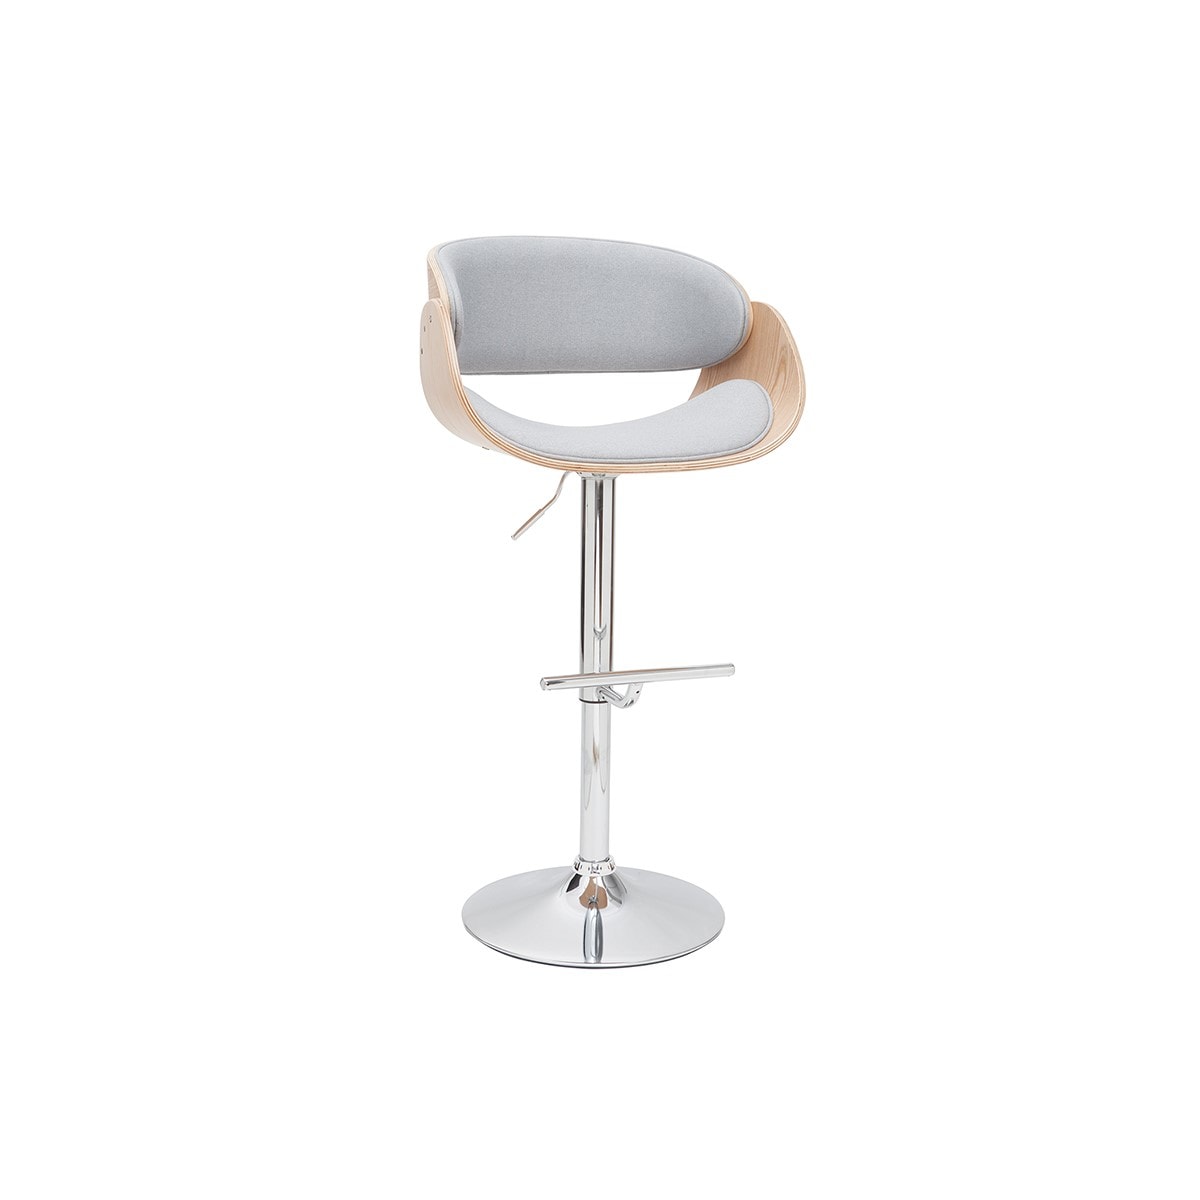 Chaise design blanc et bois clair BENT - Miliboo